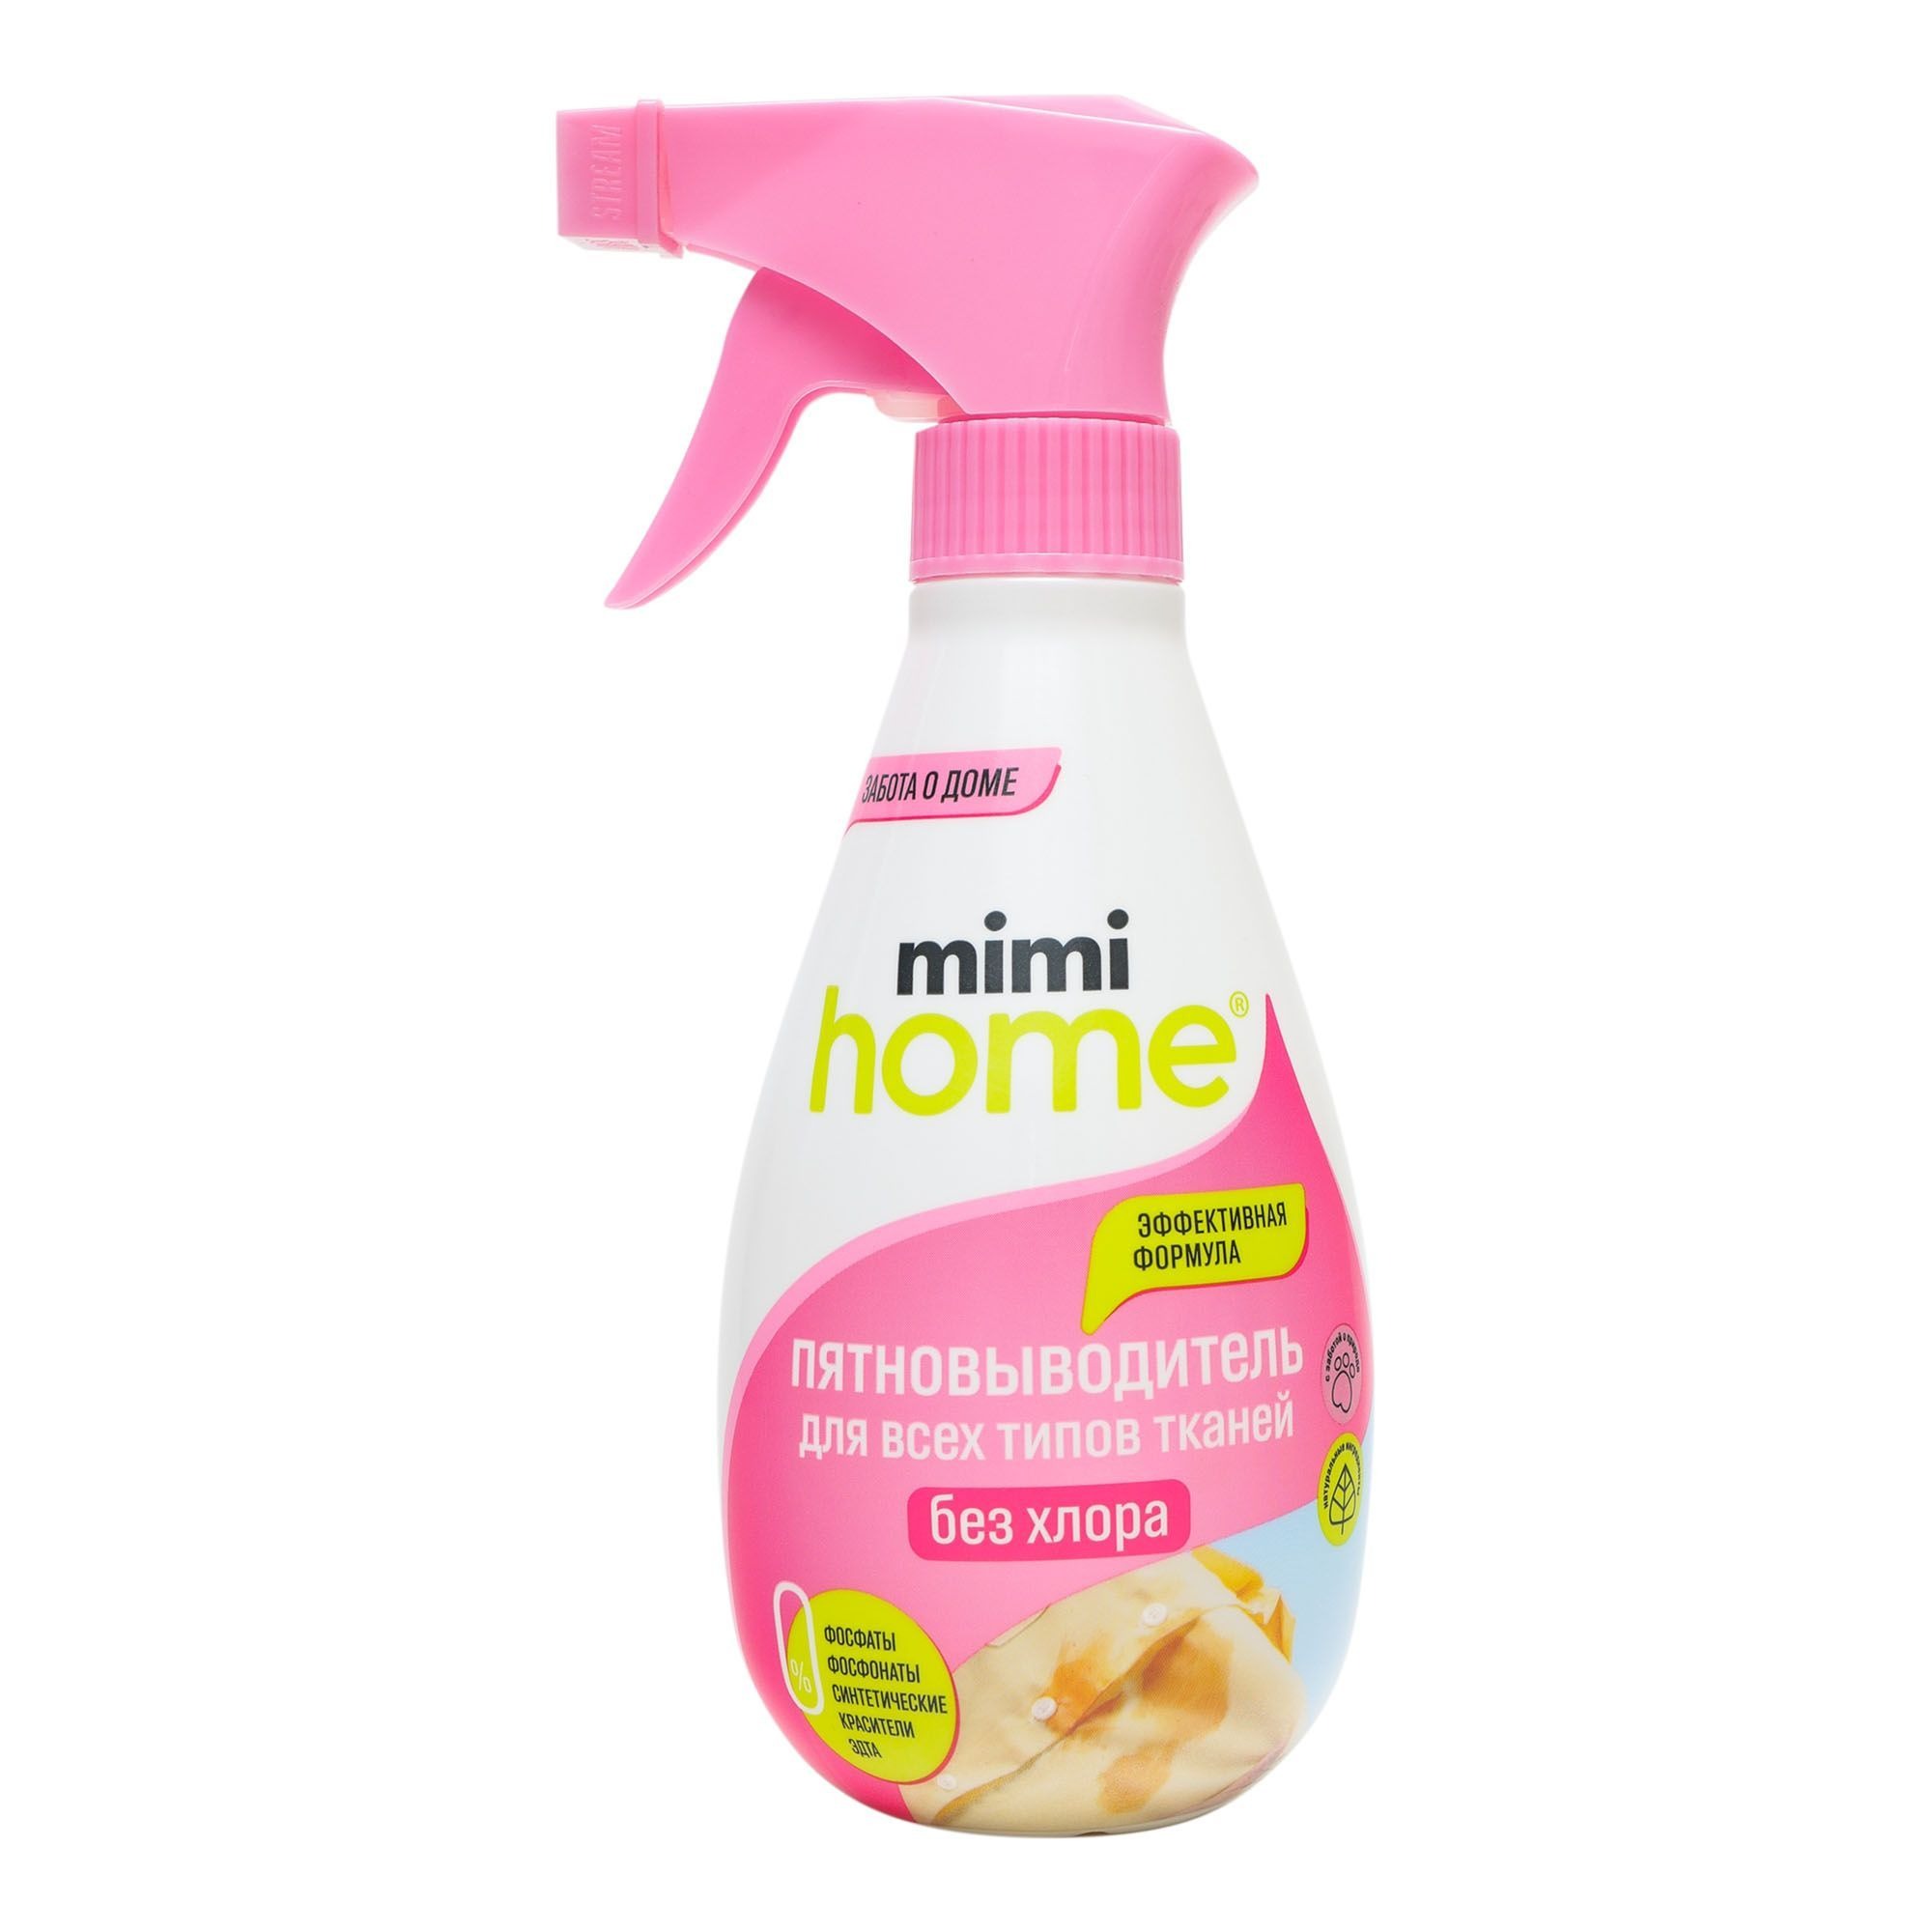 Пятновыводитель Mimi Home для всех типов ткани 370 мл clean home отбеливатель пятновыводитель экспресс эффект 1000